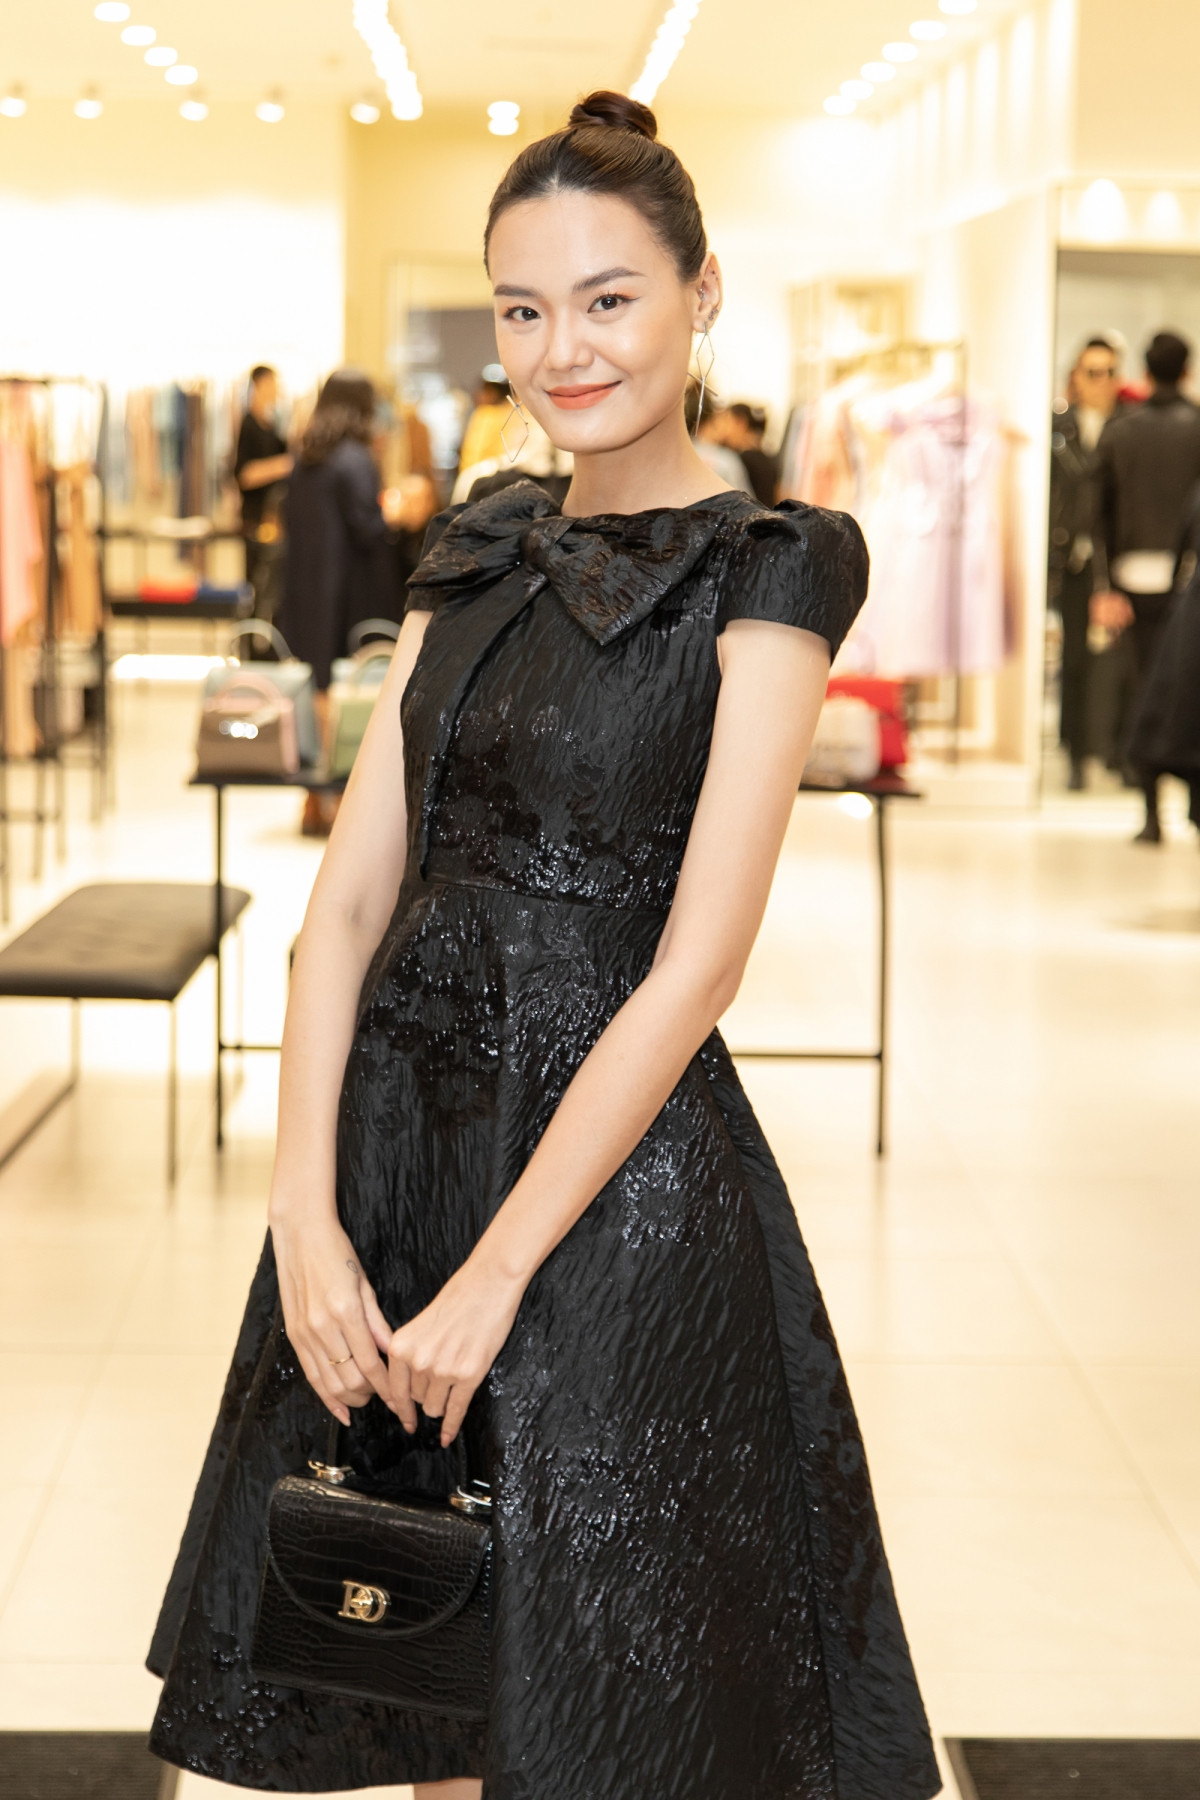 Người mẫu Lê Thanh Thảo điệu đà trong chiếc đầm xoè màu đen, nhấn nhá bằng hoạ tiết nơ to bản ở ngực.